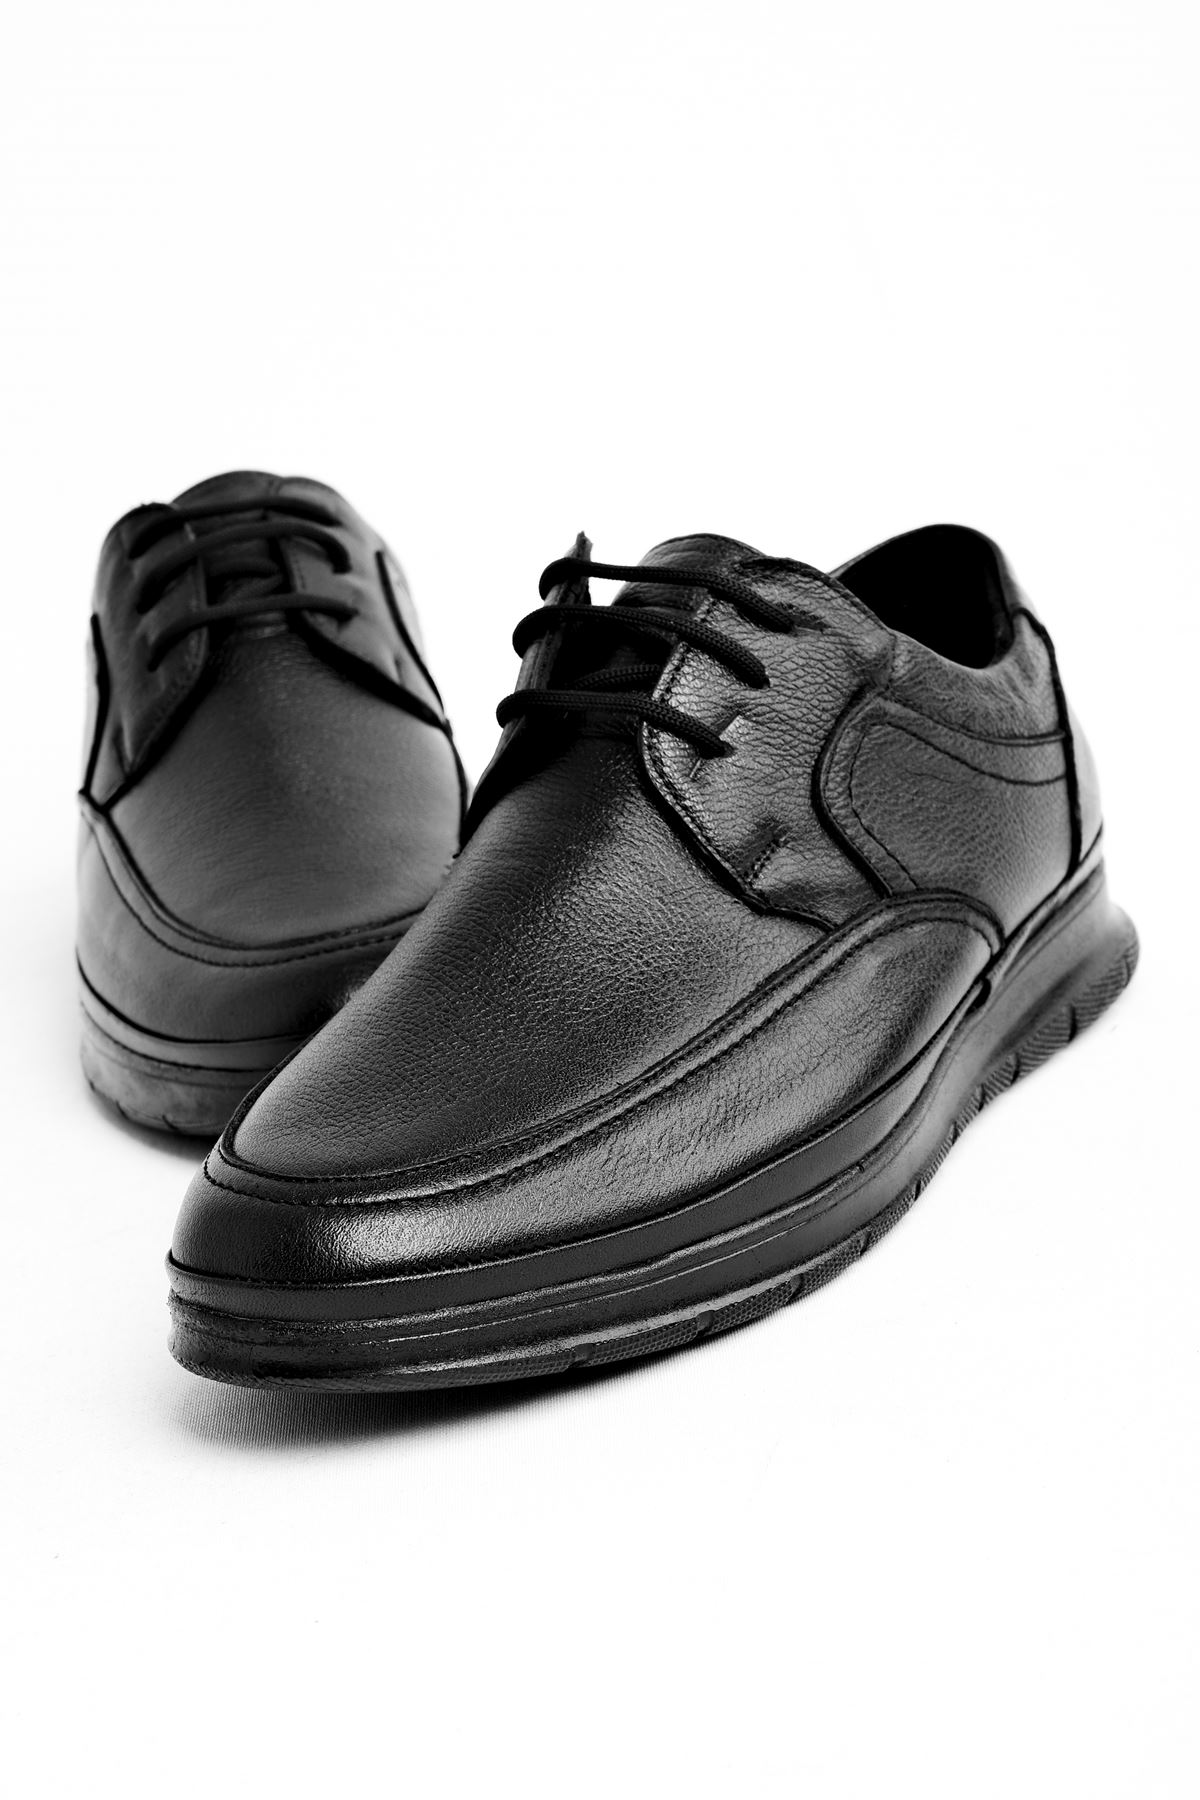 Ava Erkek Hakiki Deri Bağcıklı Günlük Ayakkabı-siyah